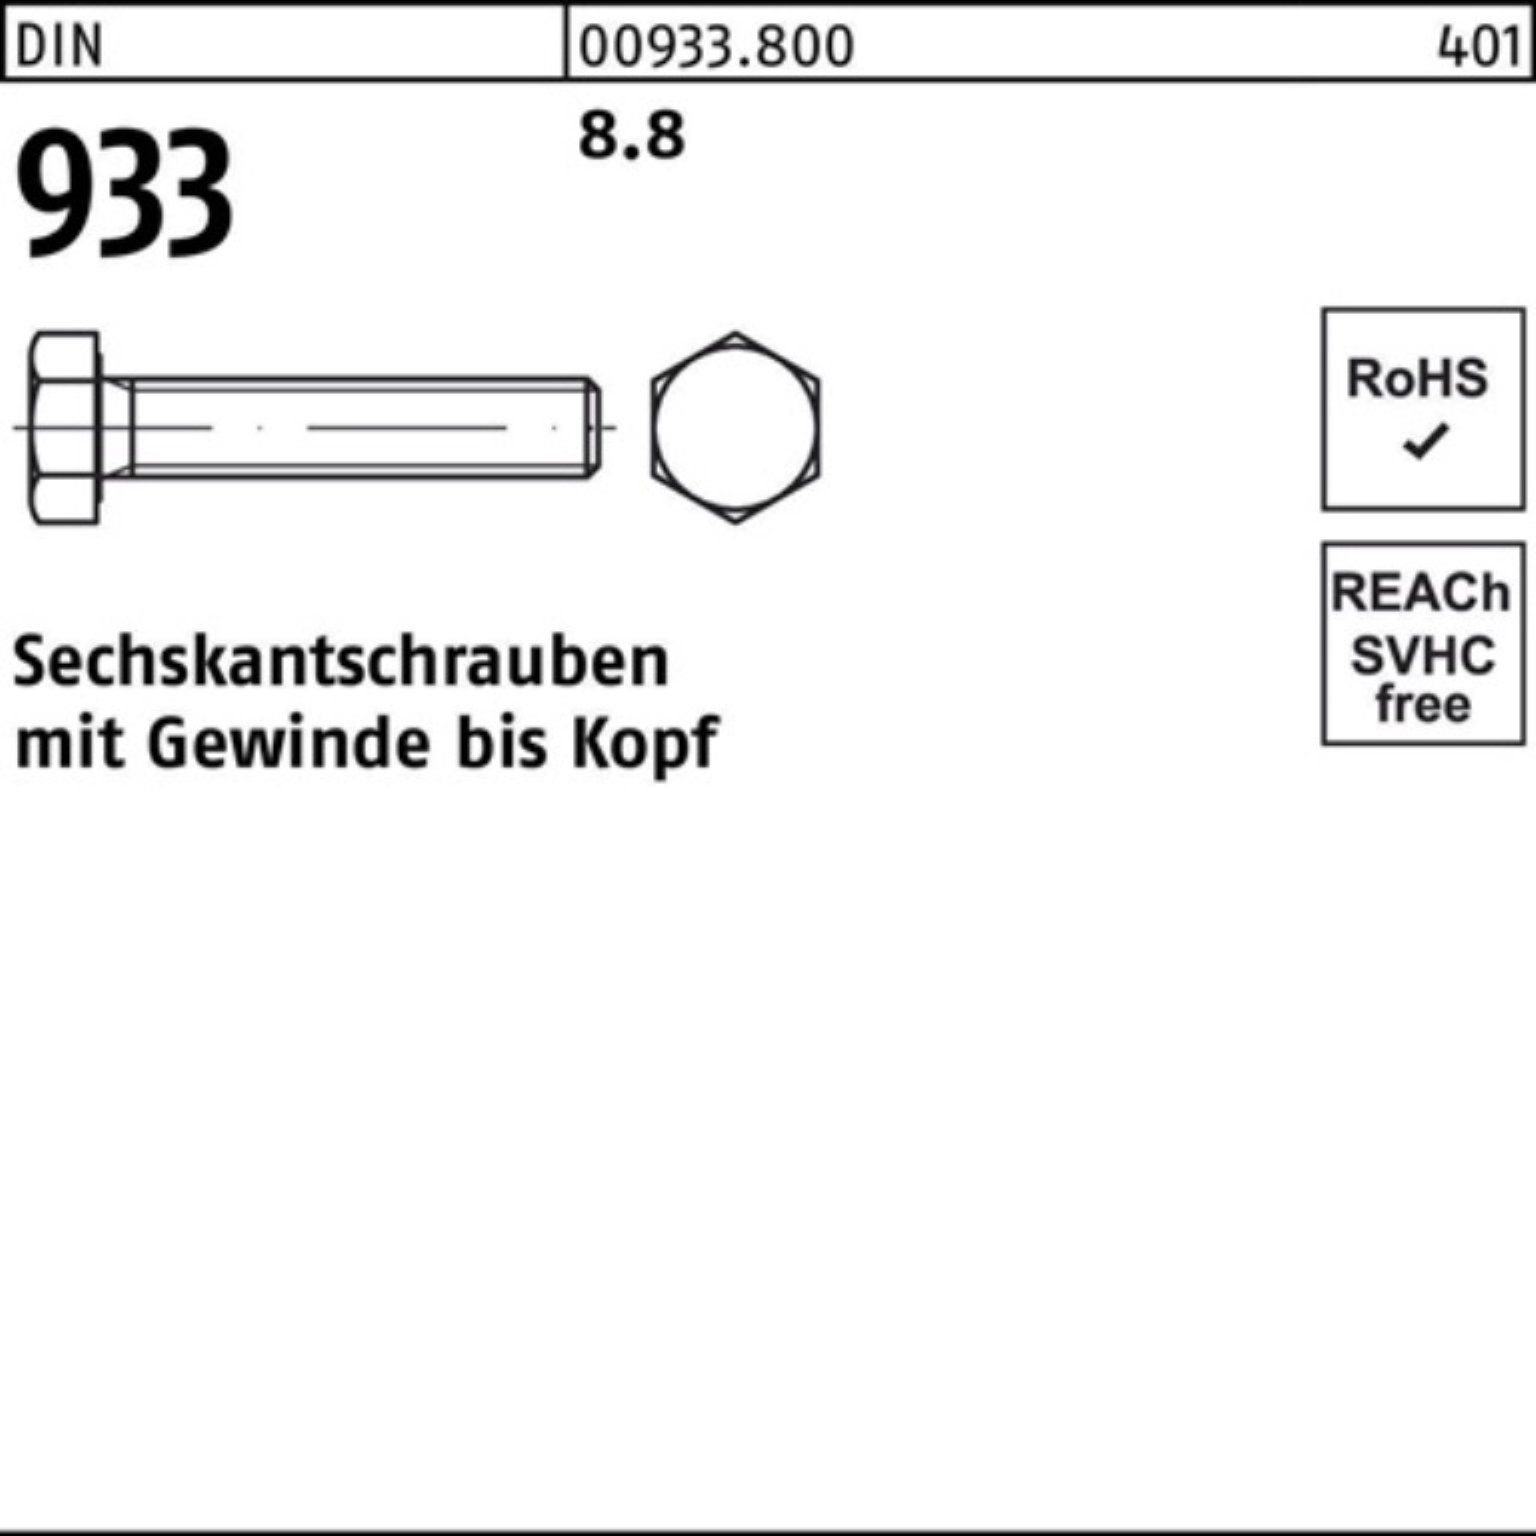 DIN 100er Sechskantschraube Sechskantschraube 50 8.8 45 Reyher DIN Stück VG 933 933 Pack M18x